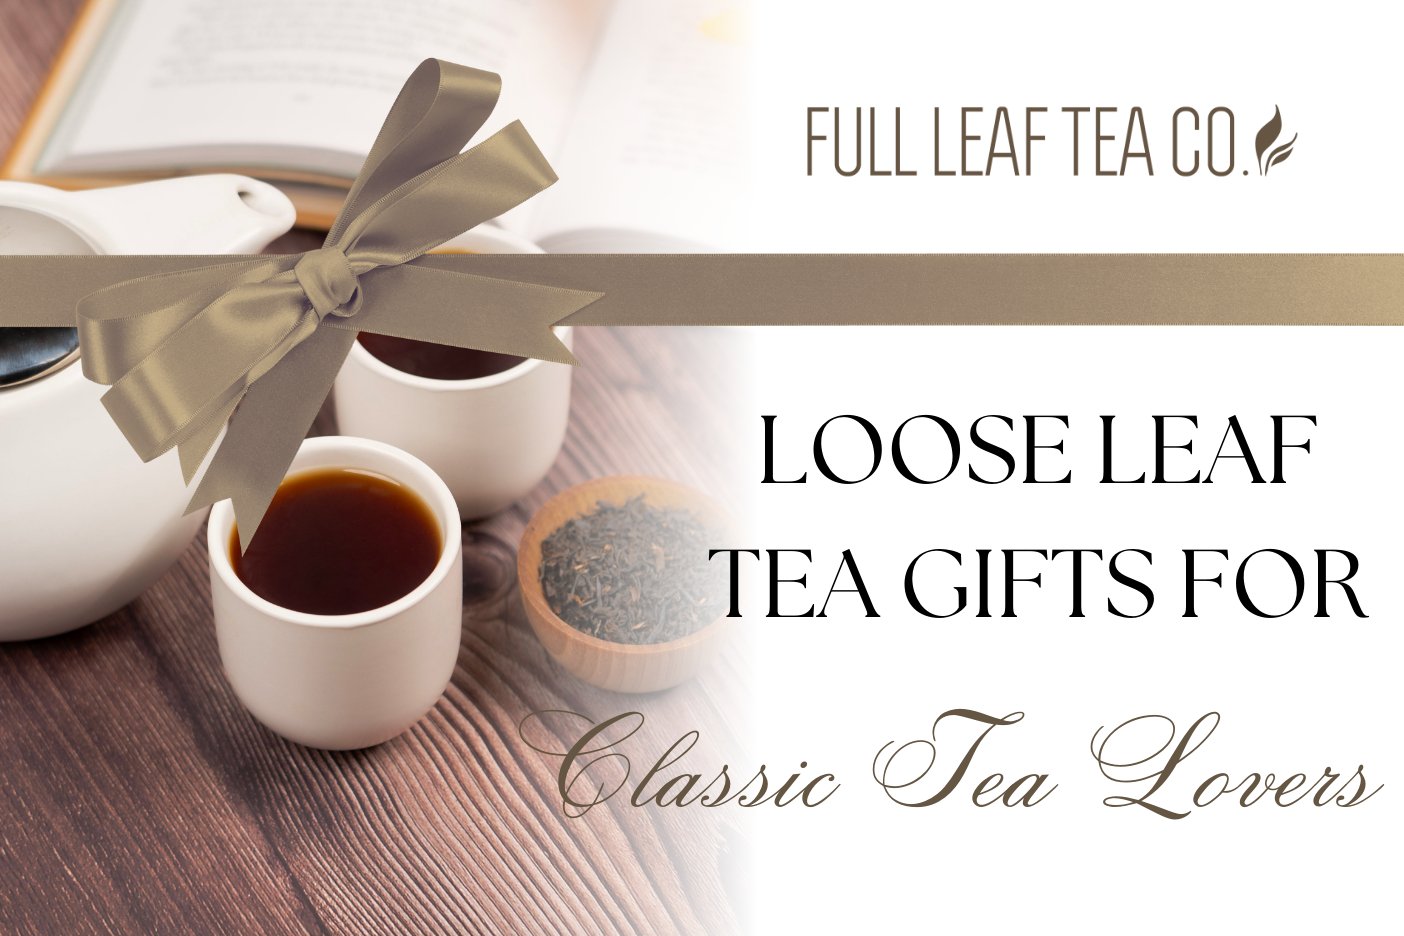 Loose Leaf Tea Gifts for The Classic Tea Lover - Full Leaf Tea Company